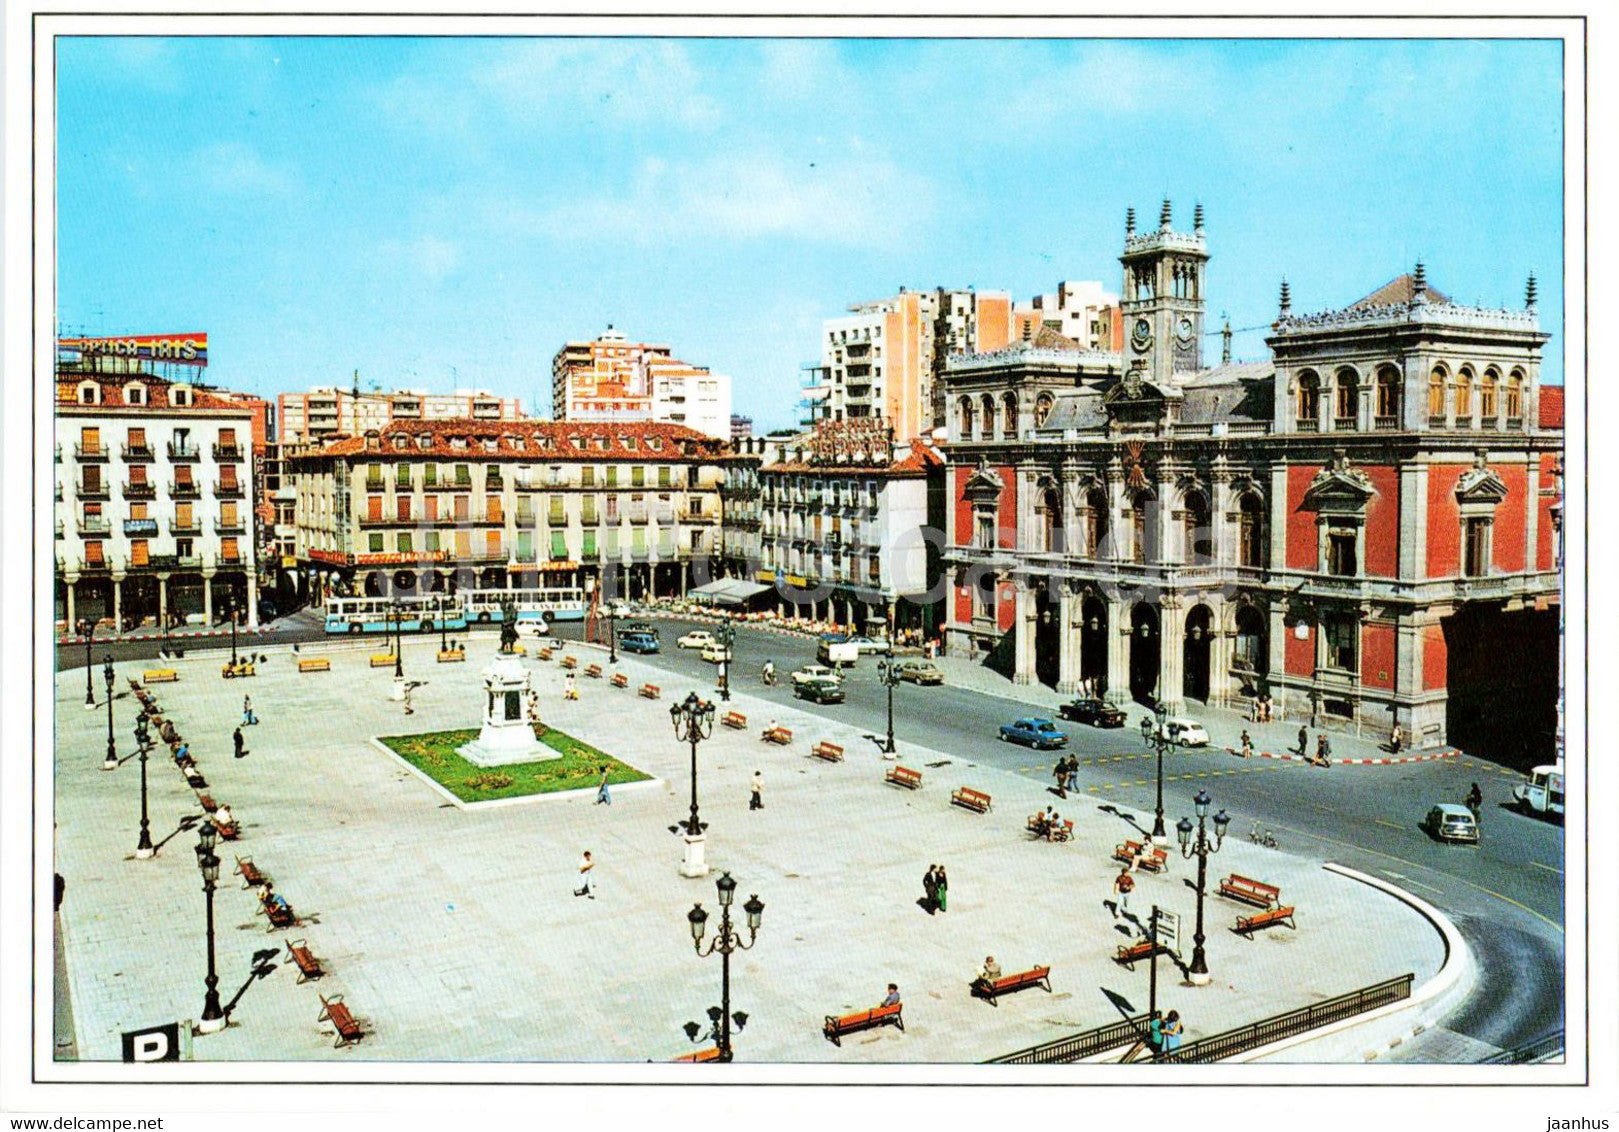 Valladolid - Plaza Mayor y Ayuntamiento - Main Square and Town Hall - 96 - Spain - unused - JH Postcards